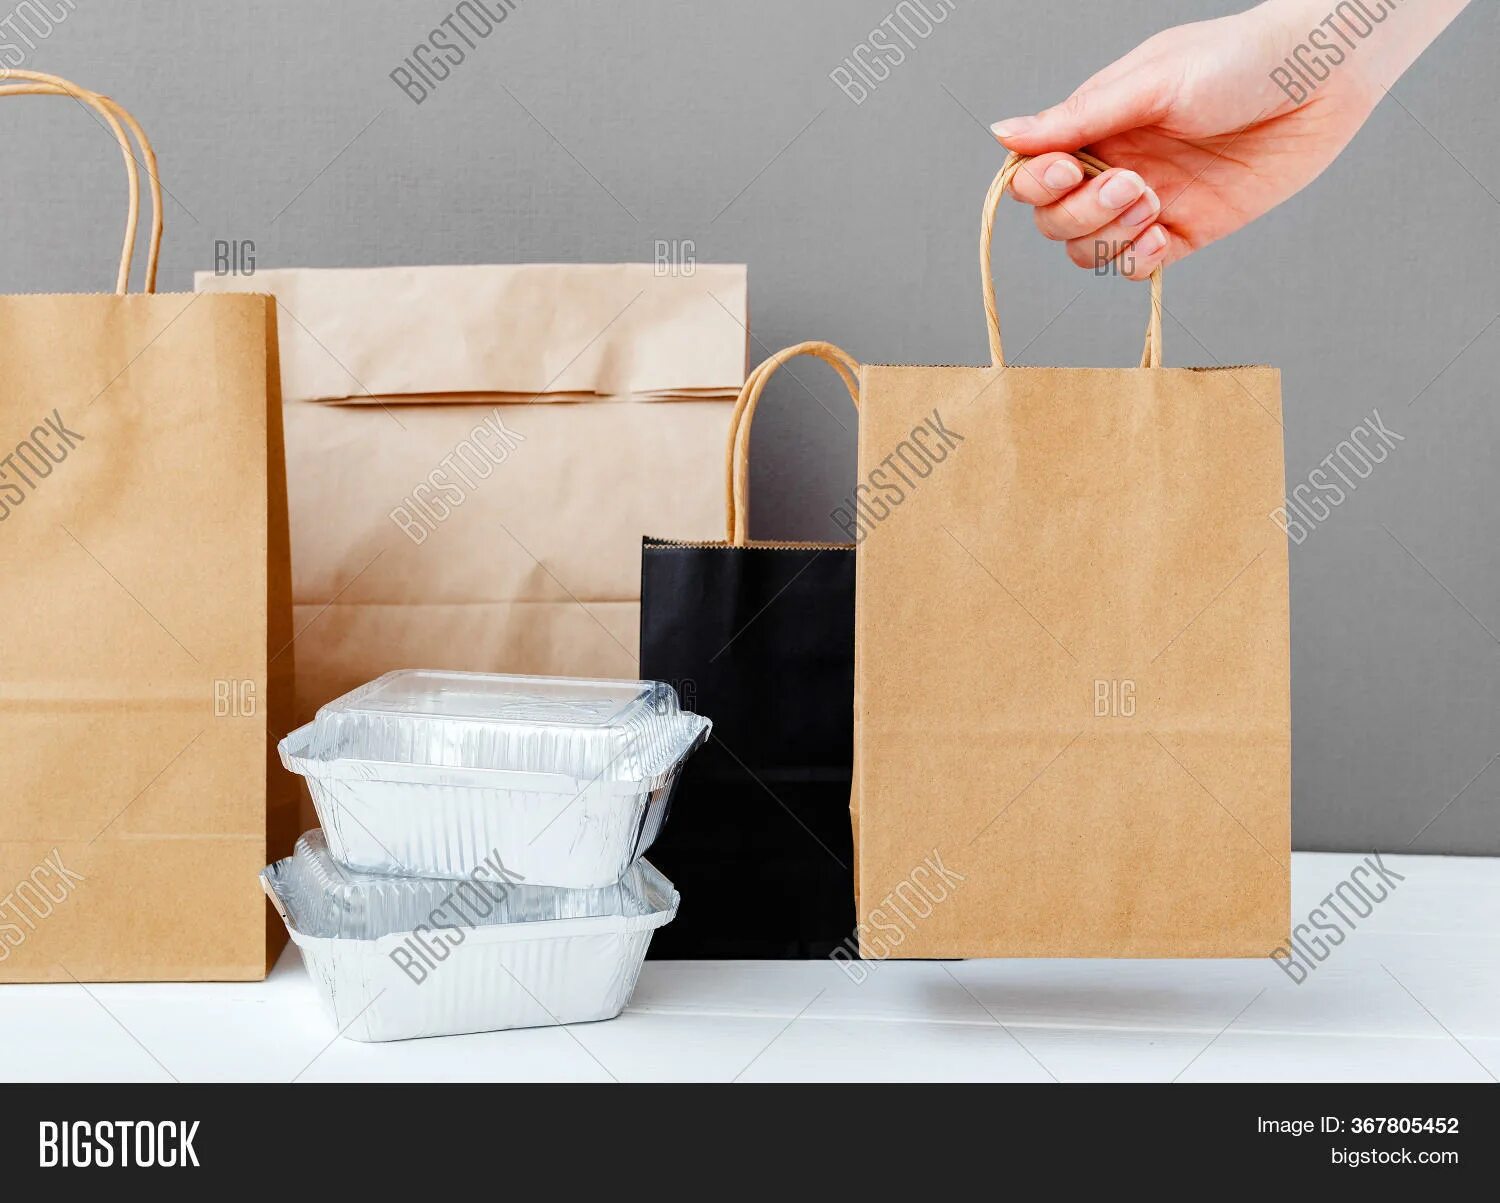 Сколько заработать на доставке еды. Пакет с едой. Крафтовый пакет в руке. Крафтовый пакет с продуктами. Бумажный пакет с едой.